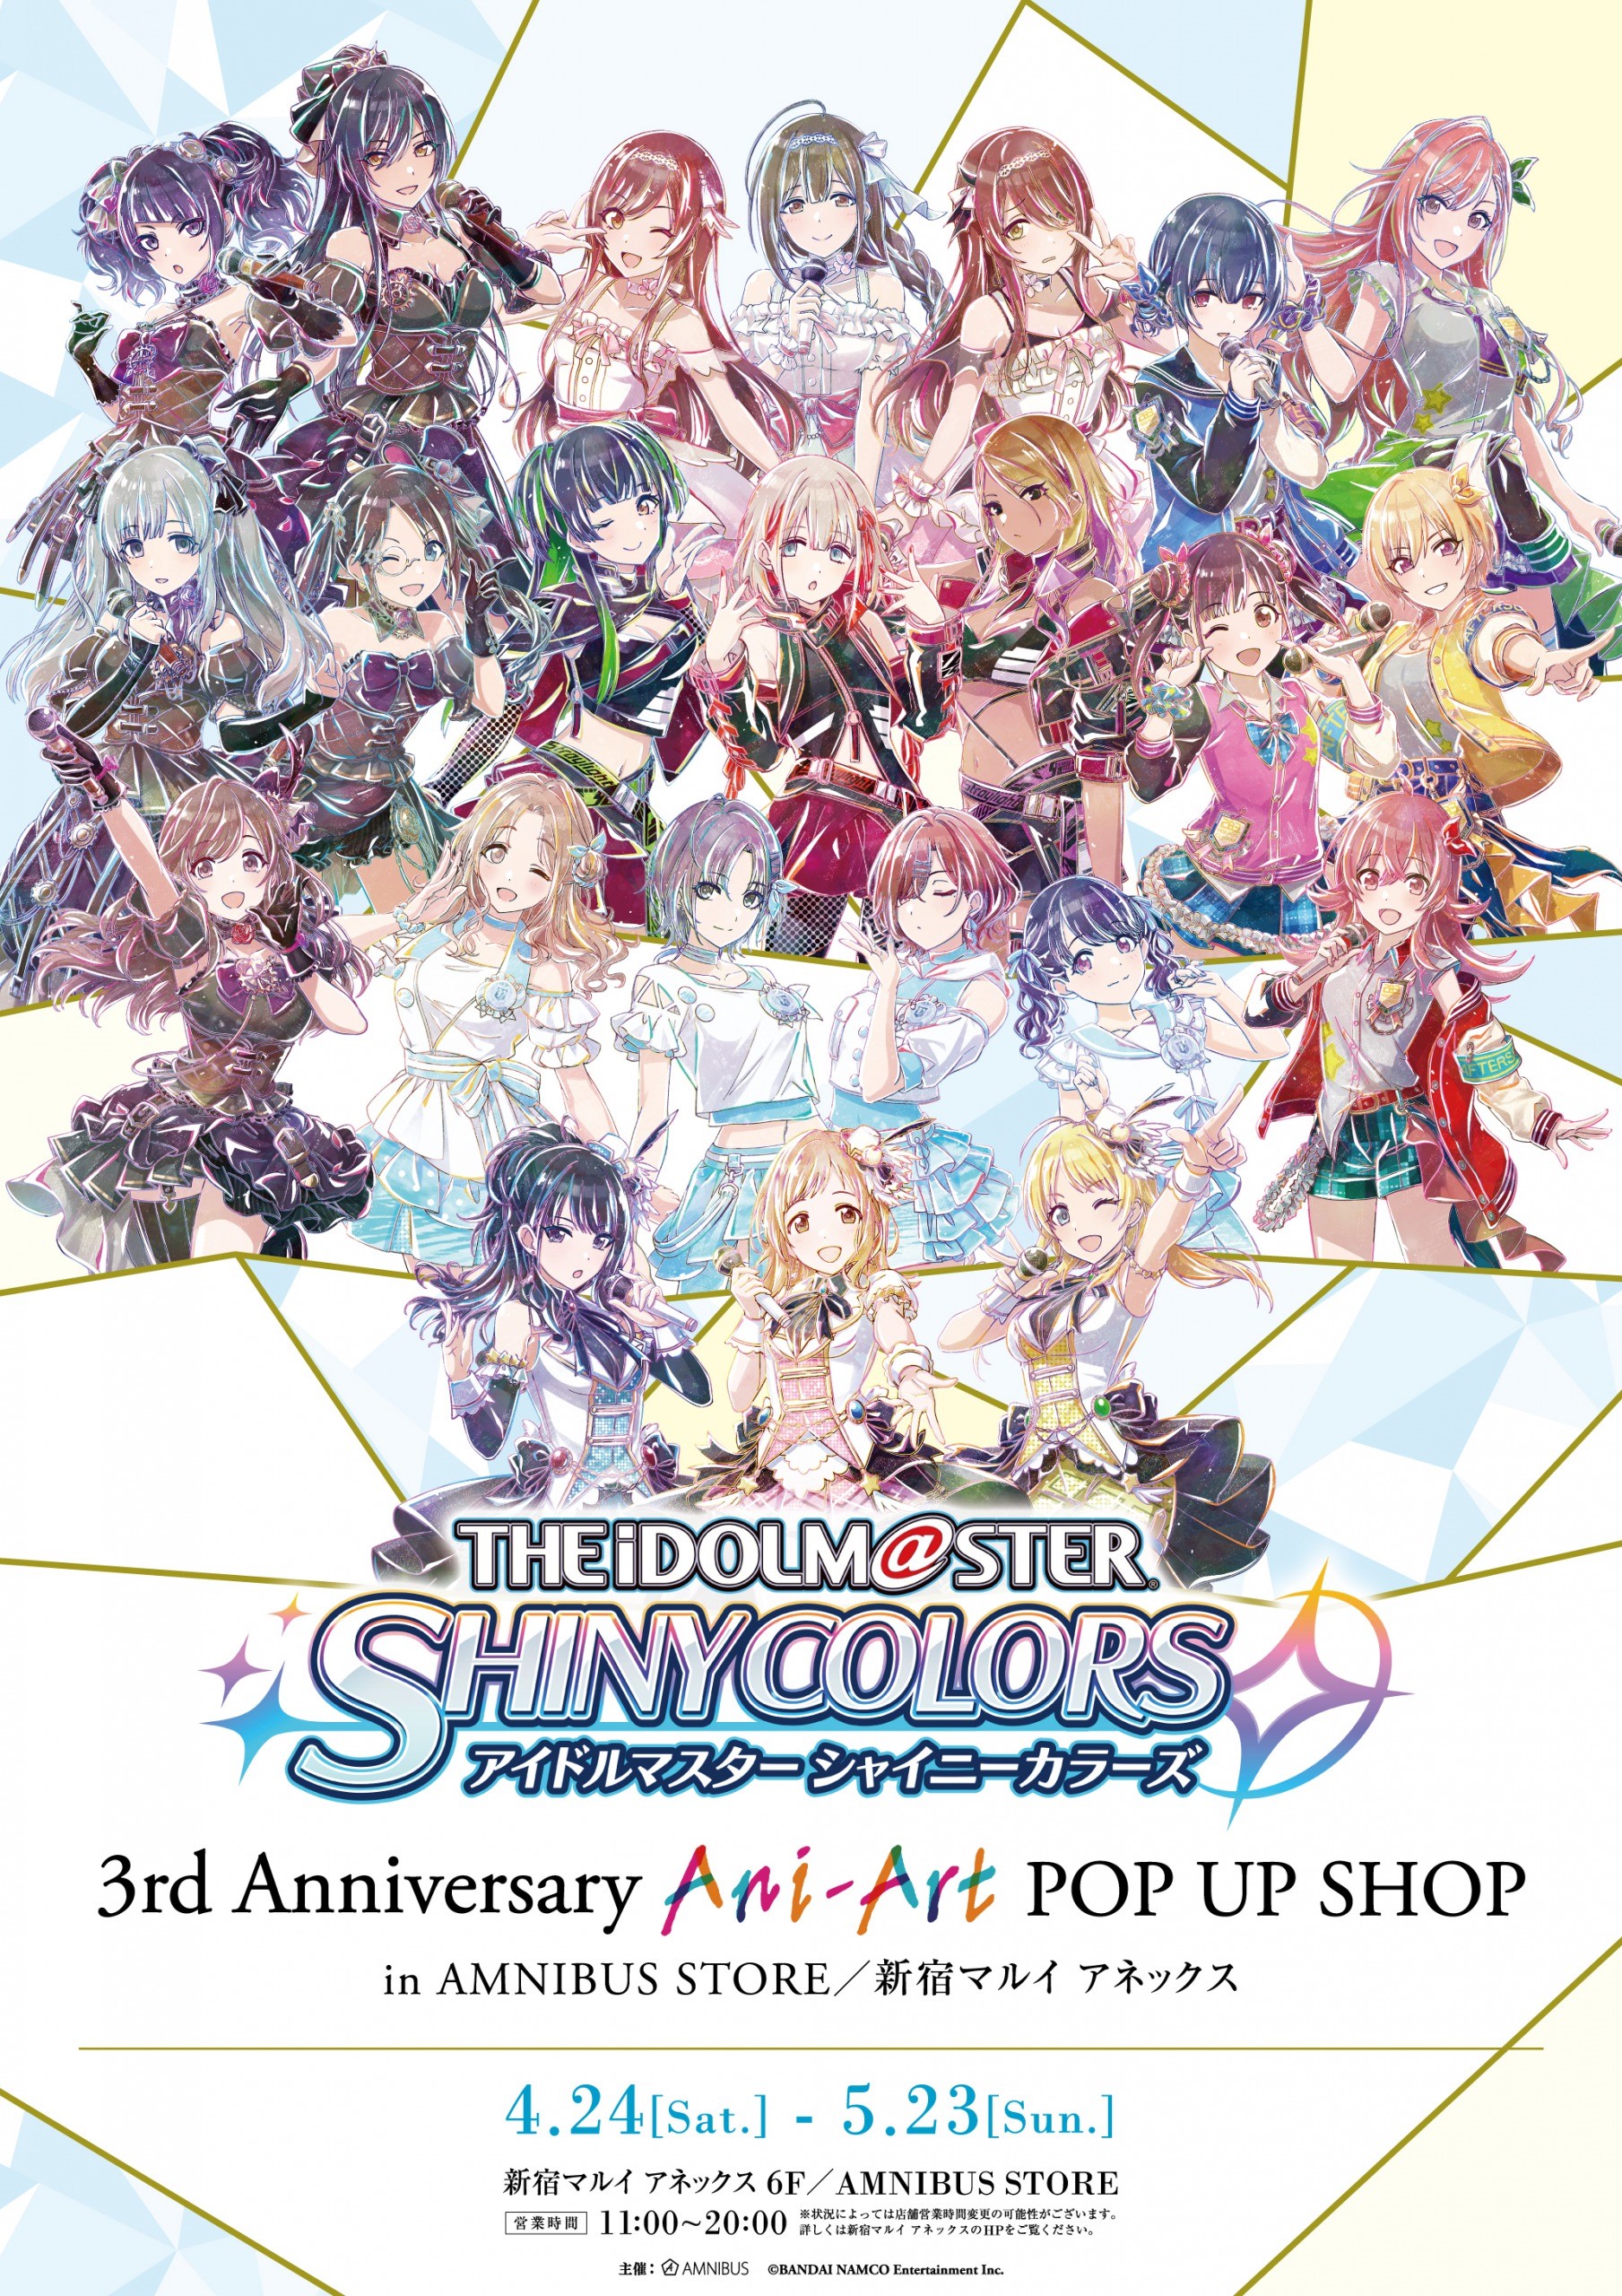 アイドルマスター シャイニーカラーズ 3rd Anniversary Ani Art Pop Up Shop In Amnibus Store 新宿マルイ アネックス の開催が決定 株式会社arma Biancaのプレスリリース